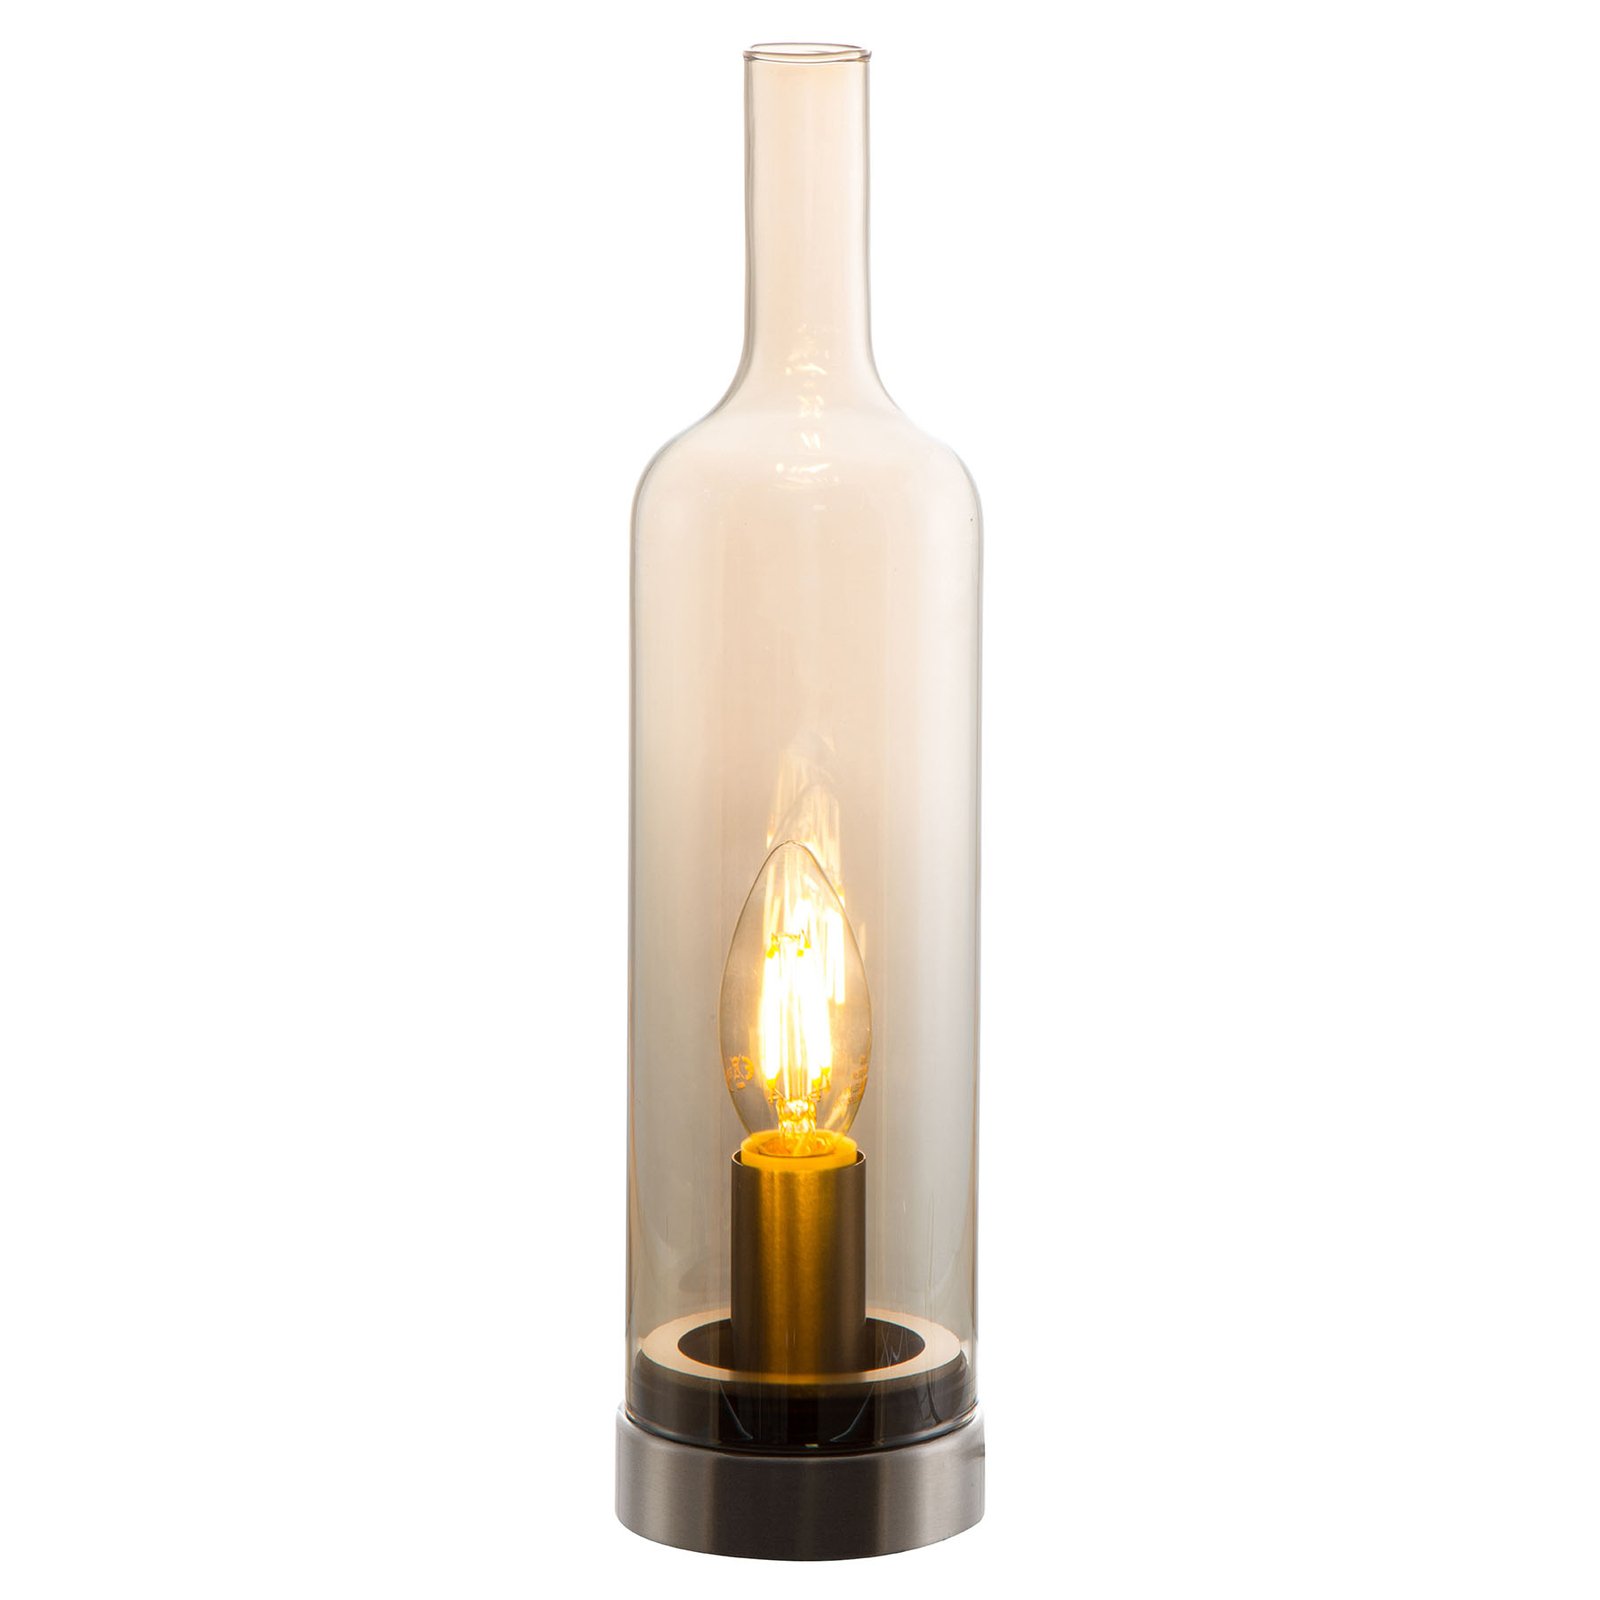 Bottle glass table lamp, amber